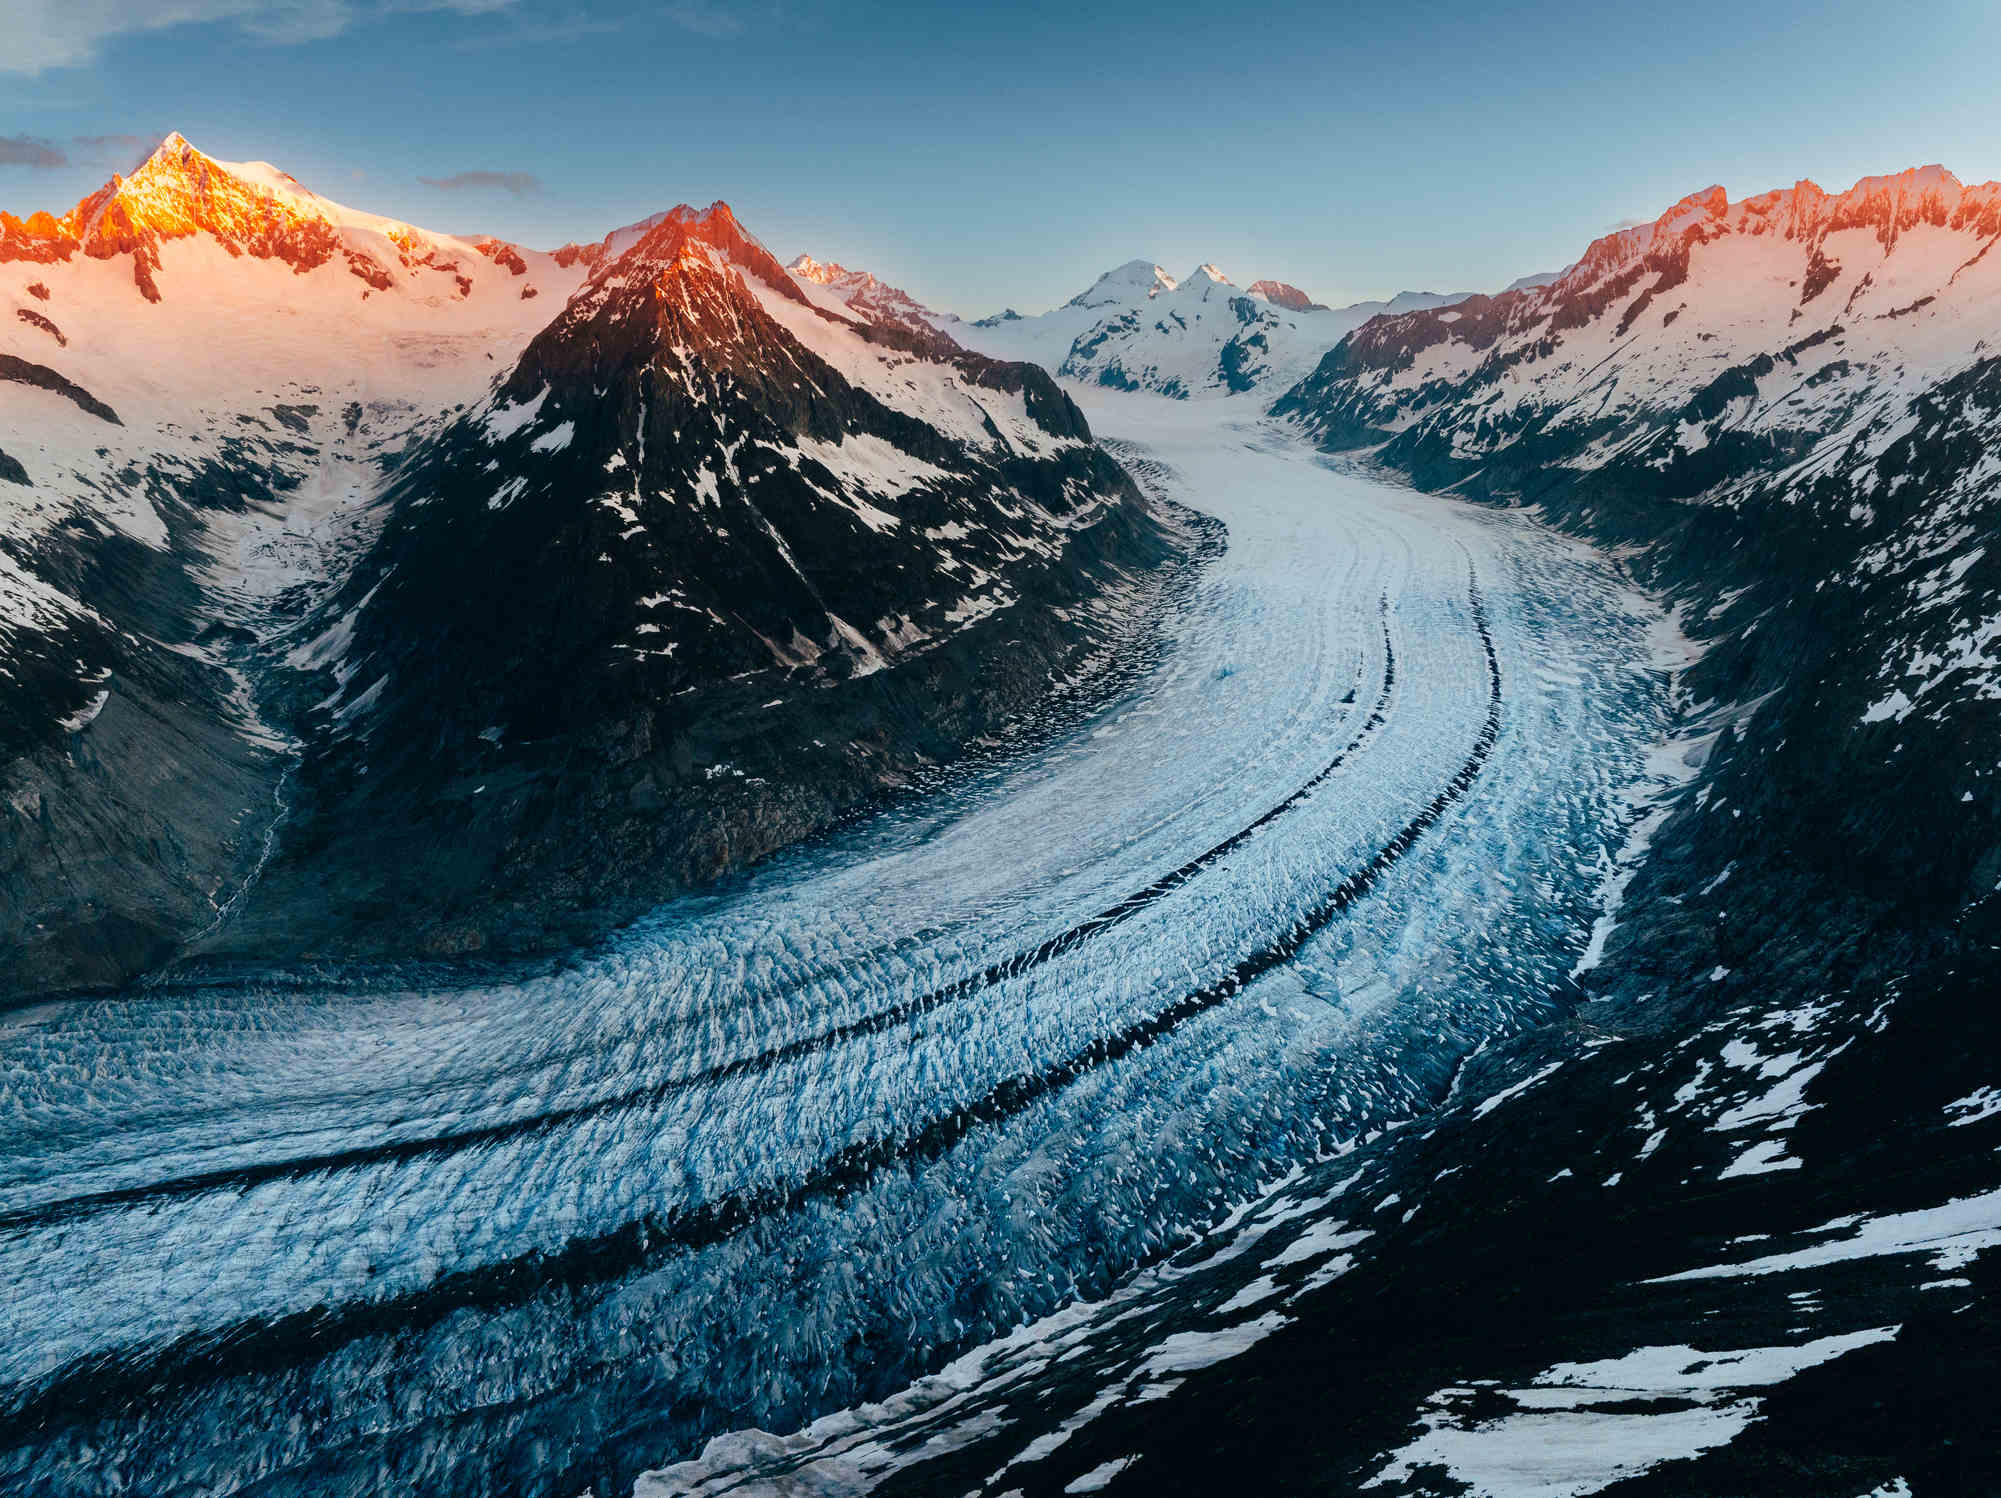 Aletsch Glacier in Switzerland at sunrise